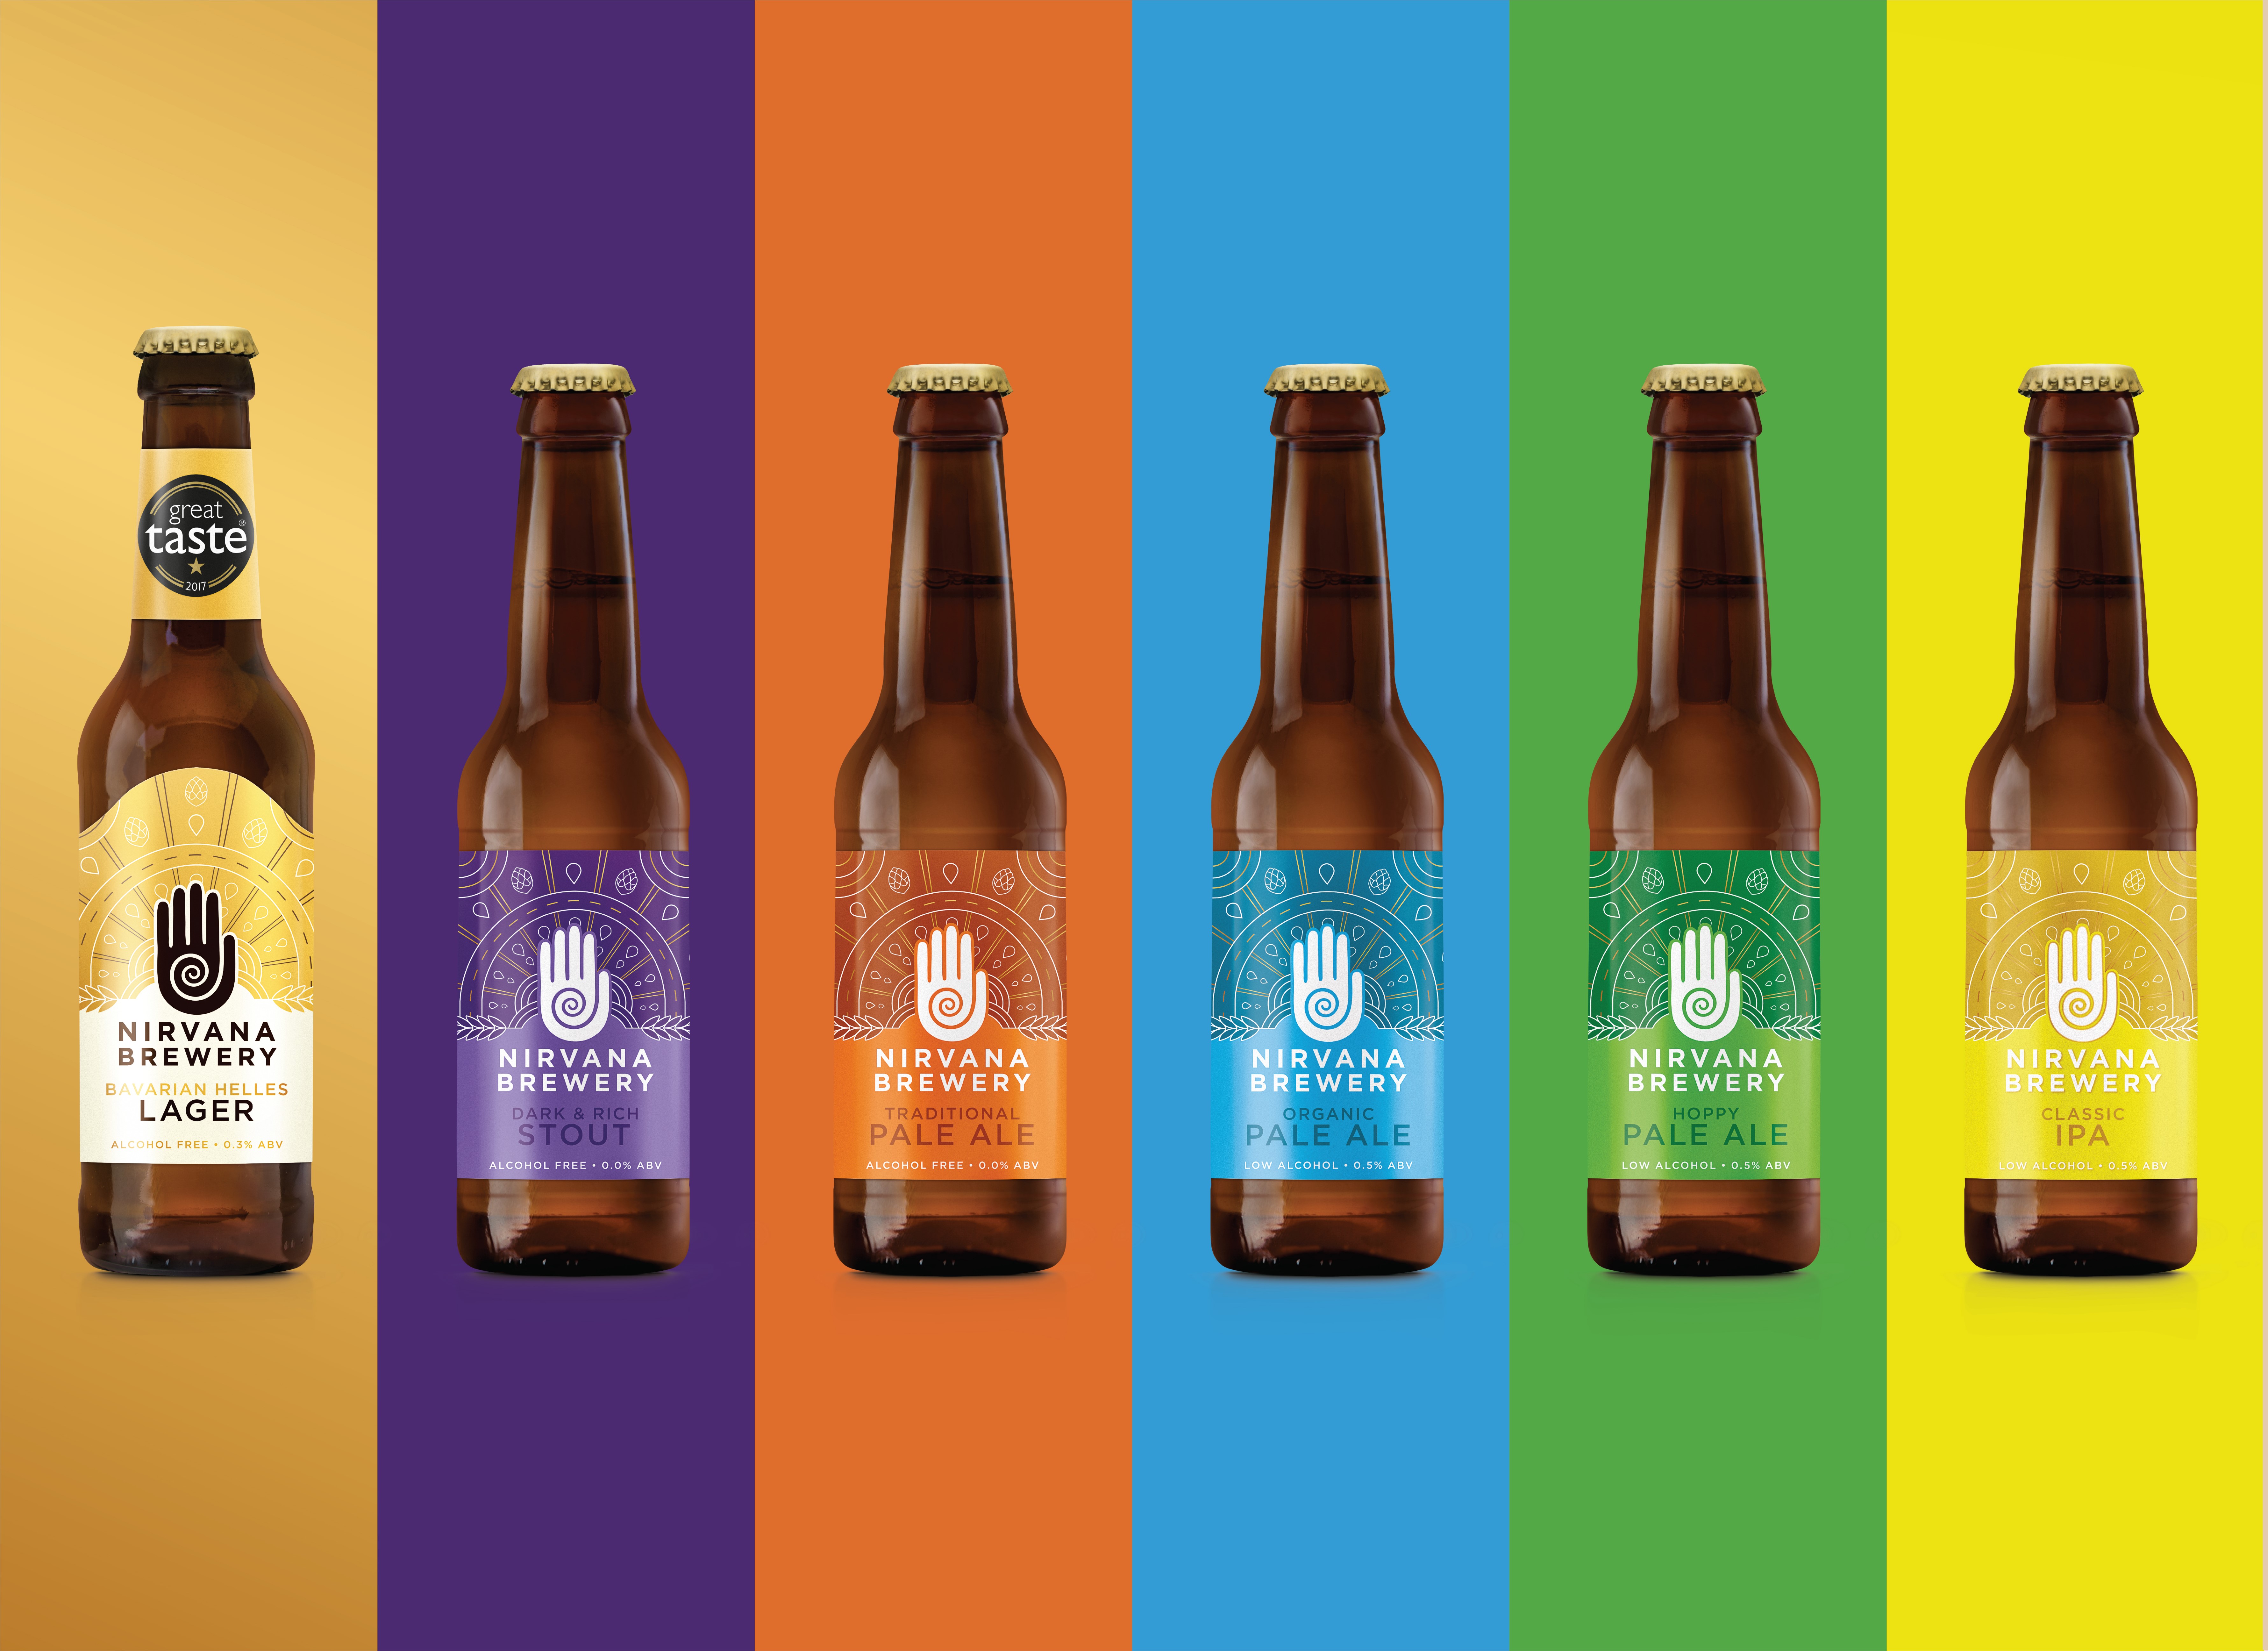 Nirvana Brewery range of craft beers image